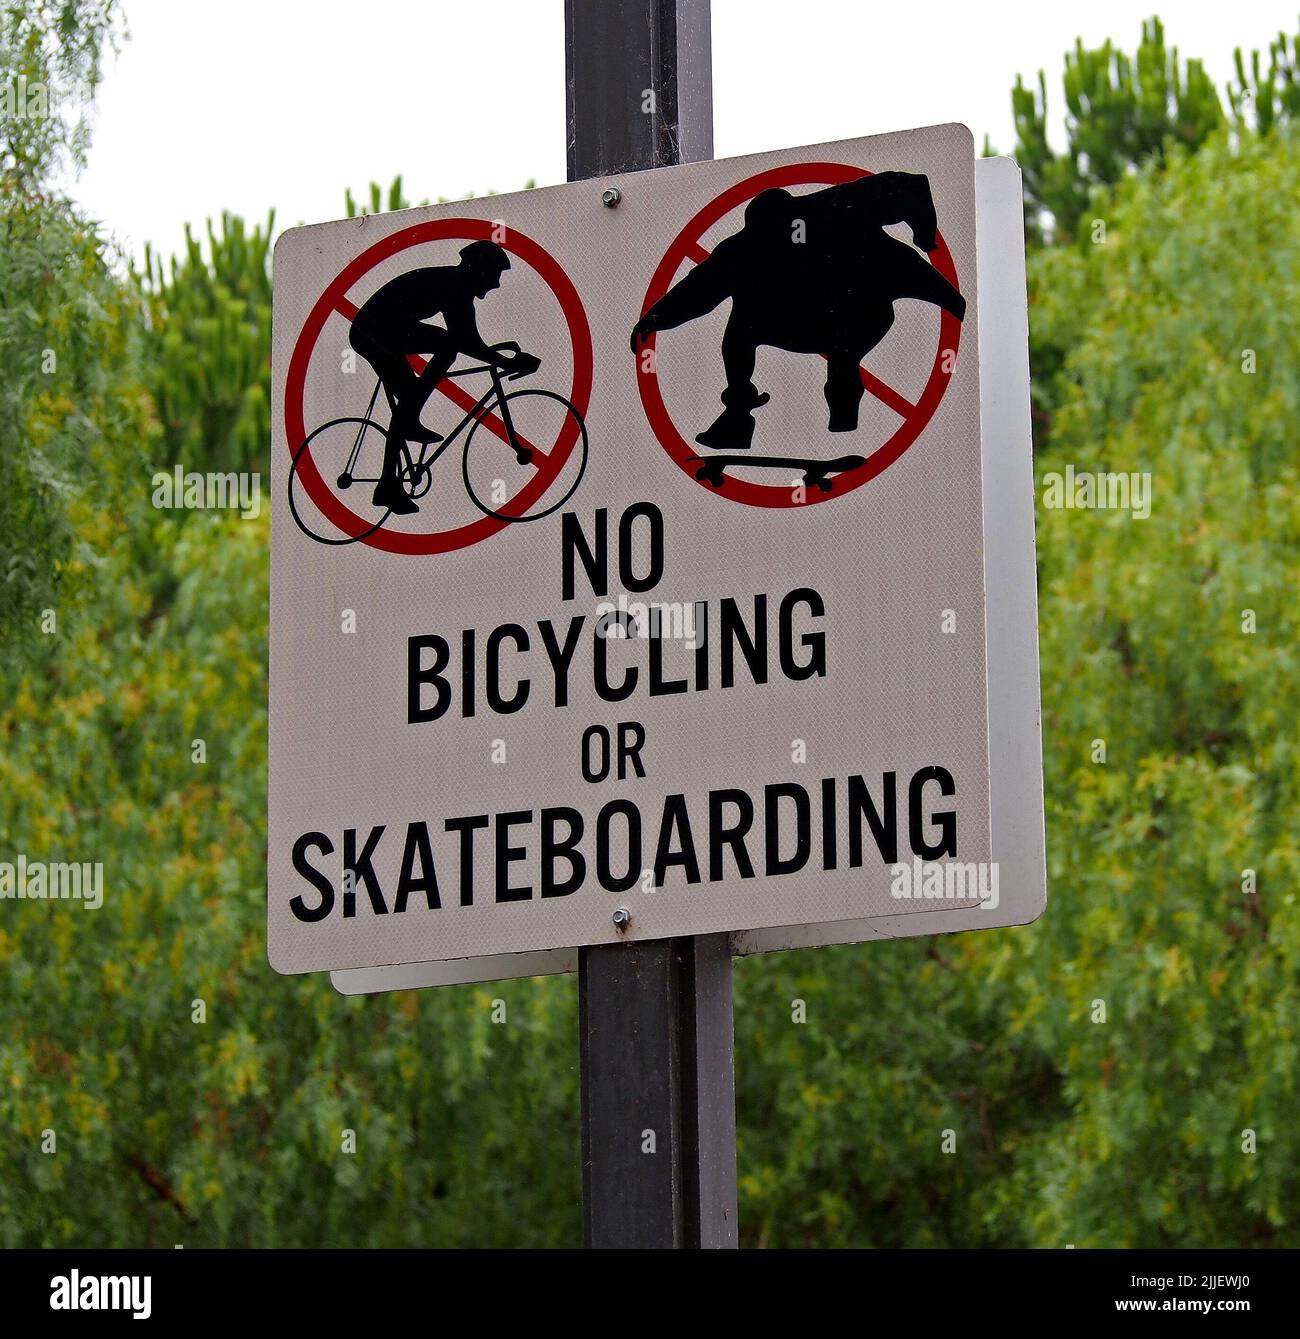 No hay símbolos de signo de ciclismo o skateboard en el William Cann Civic Center en Union City, California Foto de stock